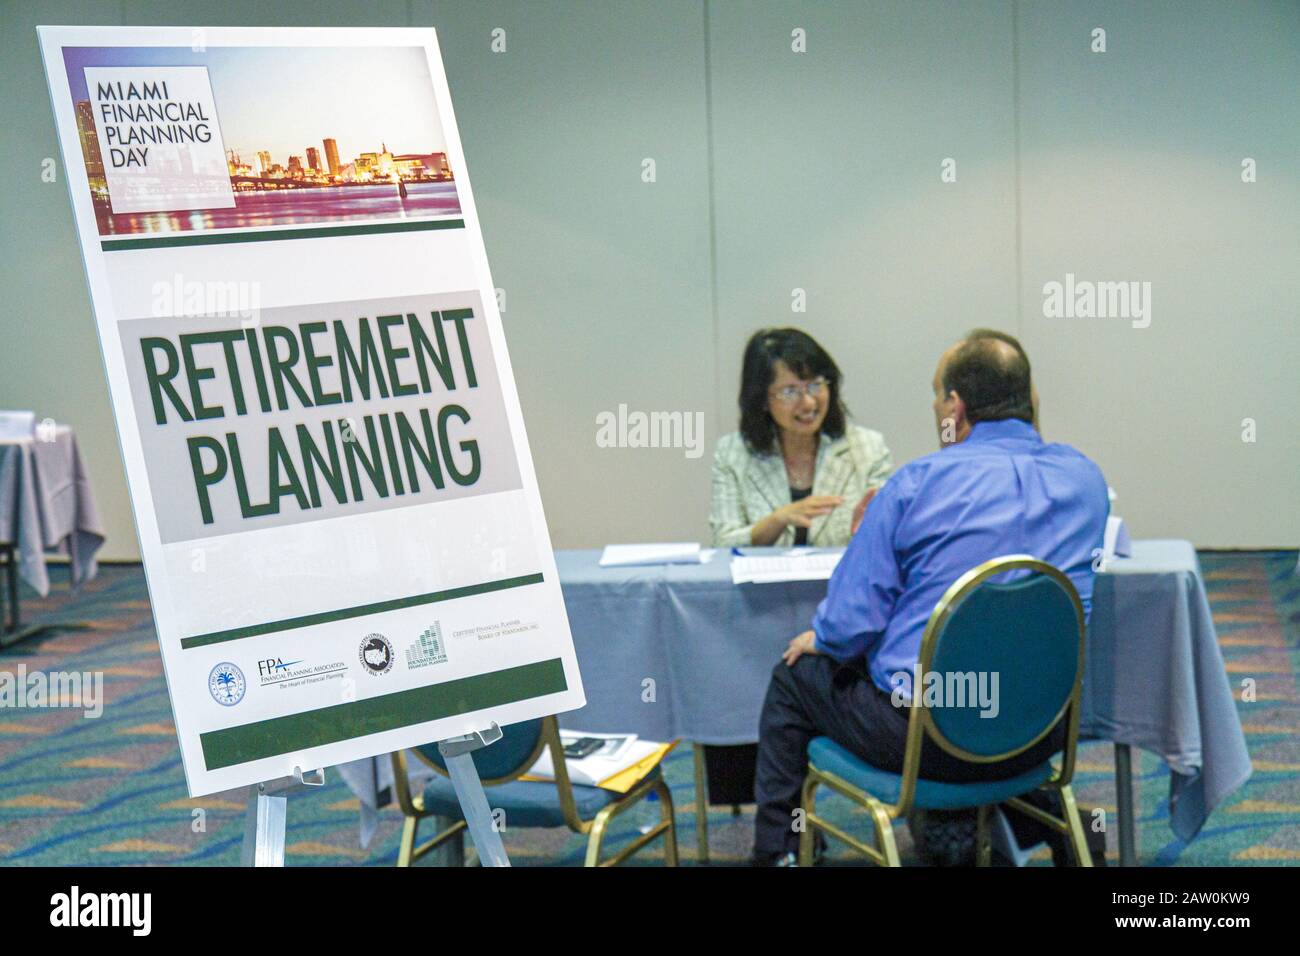 Miami Florida,James L. Knight Convention Center,Miami Financial Planning Day,conseils gratuits,planificateurs guidanceal,signer,planification de la retraite,femme asiatique fema Banque D'Images